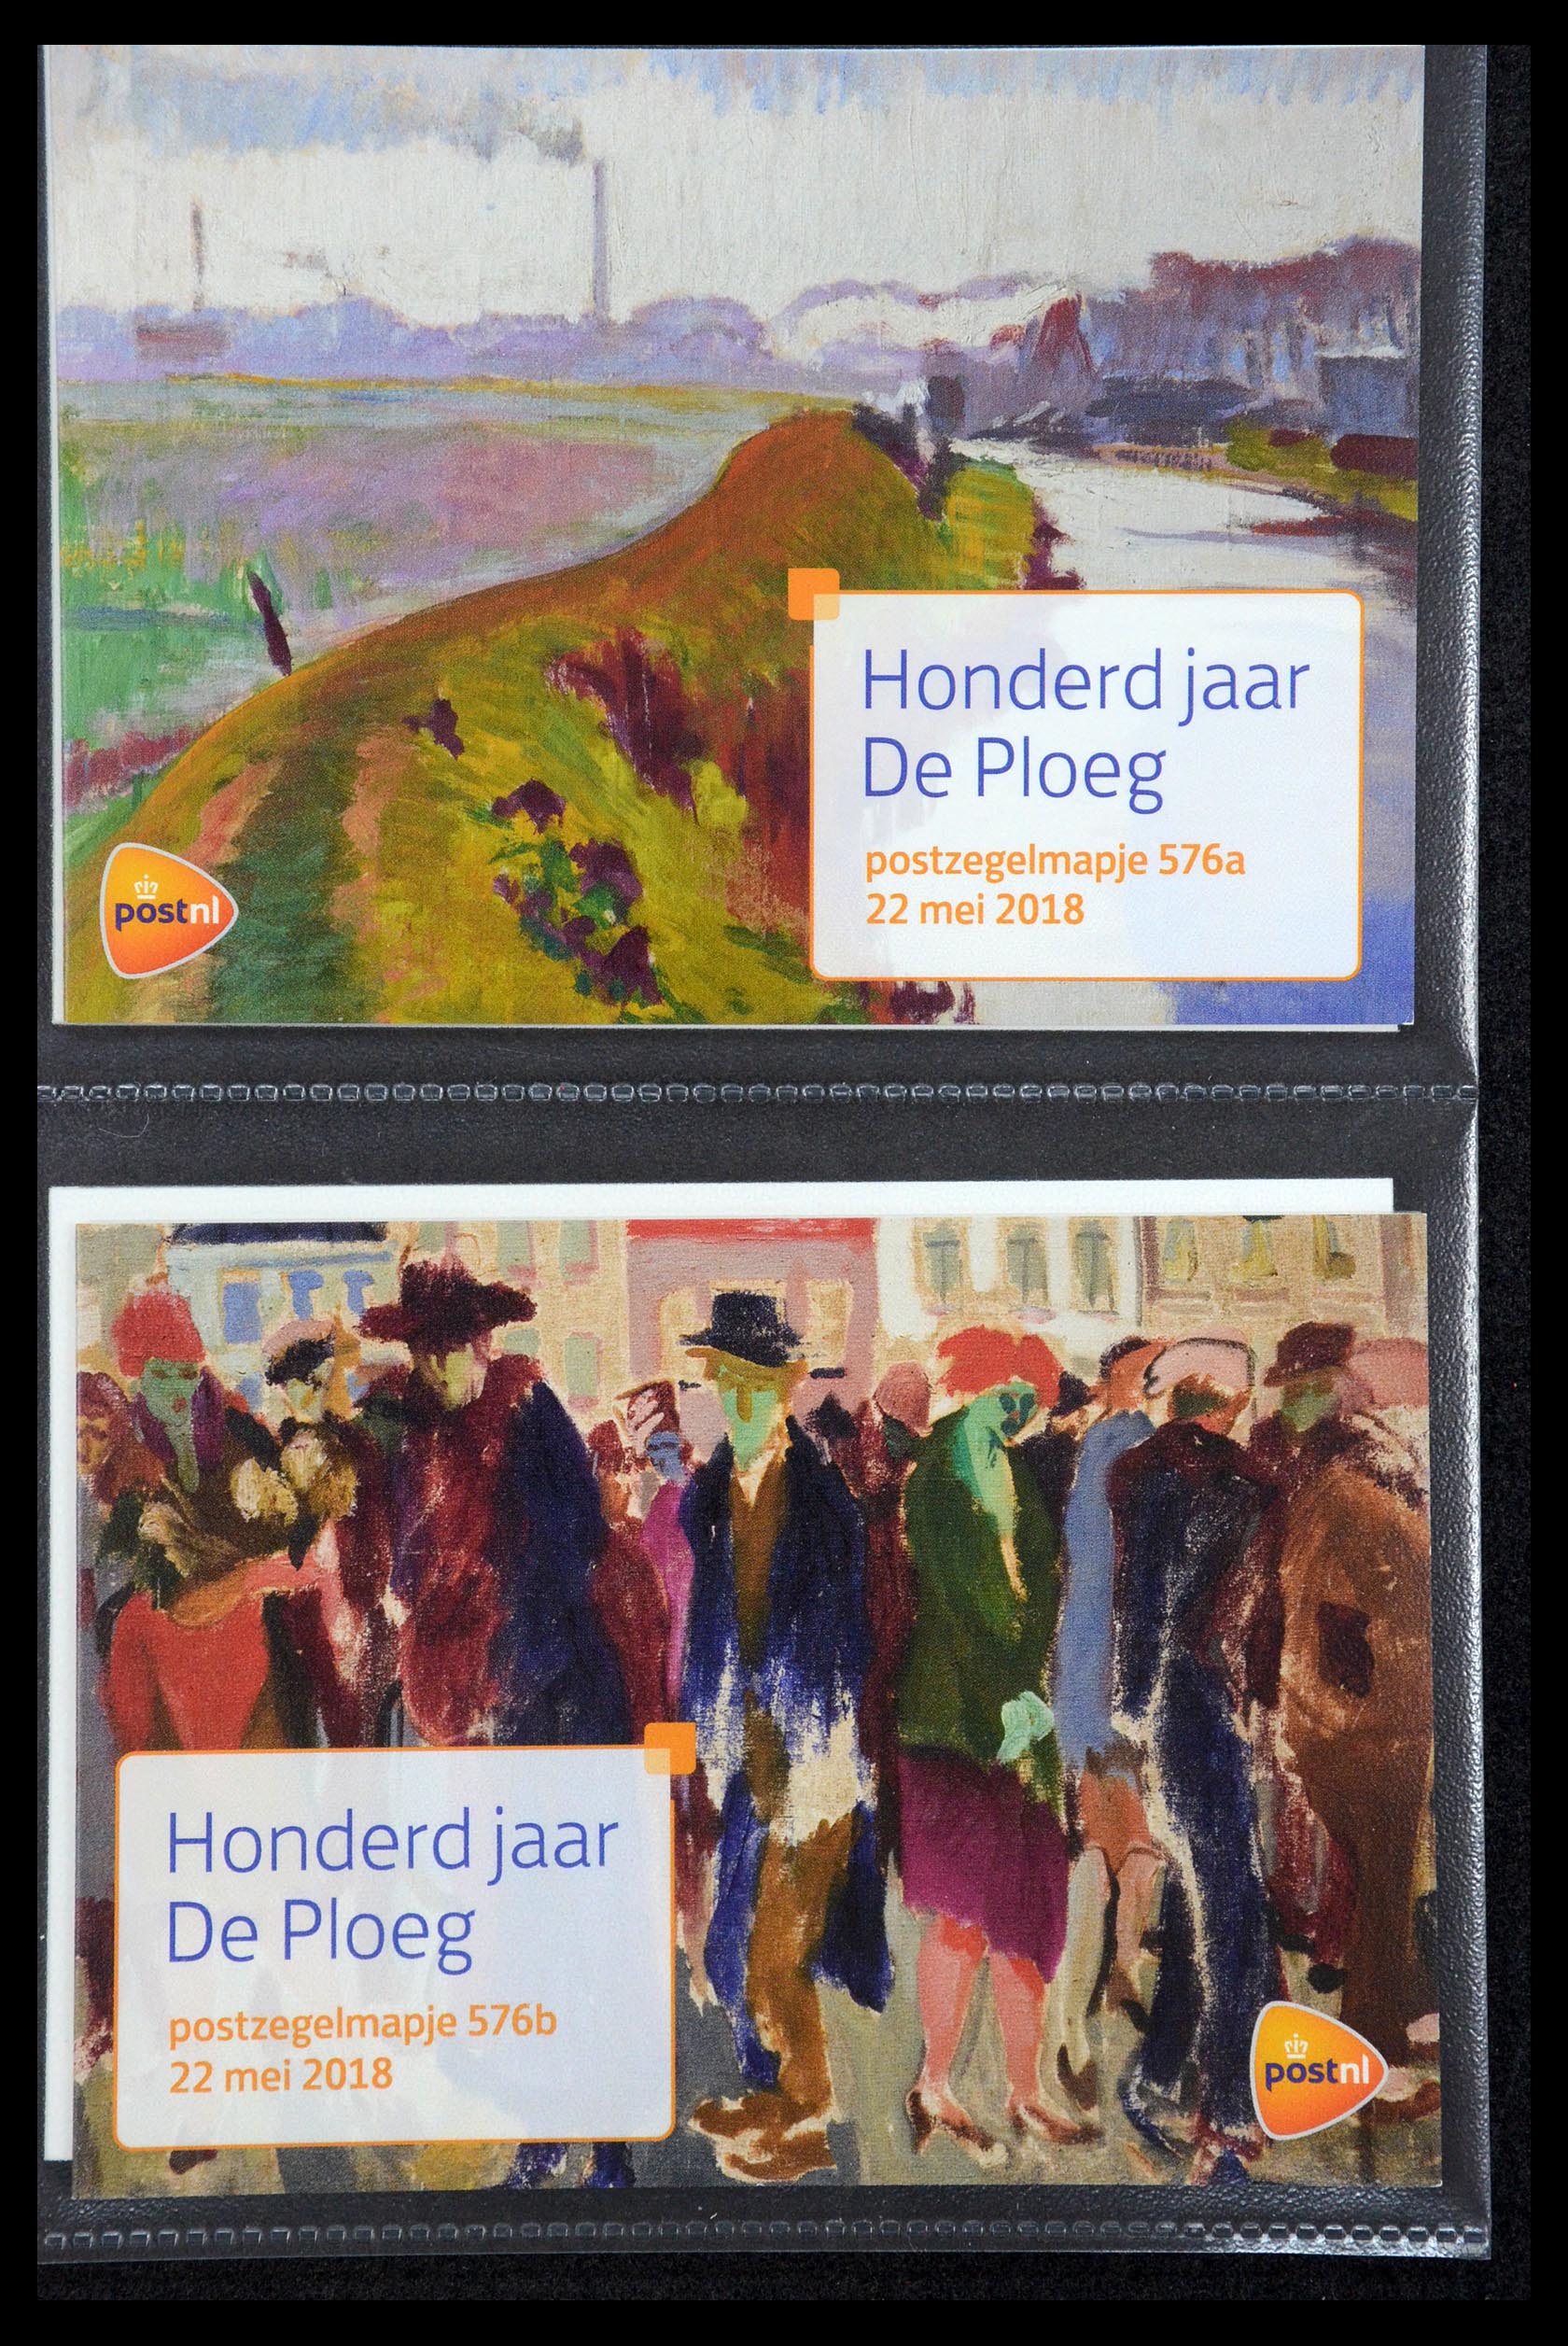 35187 347 - Stamp Collection 35187 Netherlands PTT presentation packs 1982-2019!